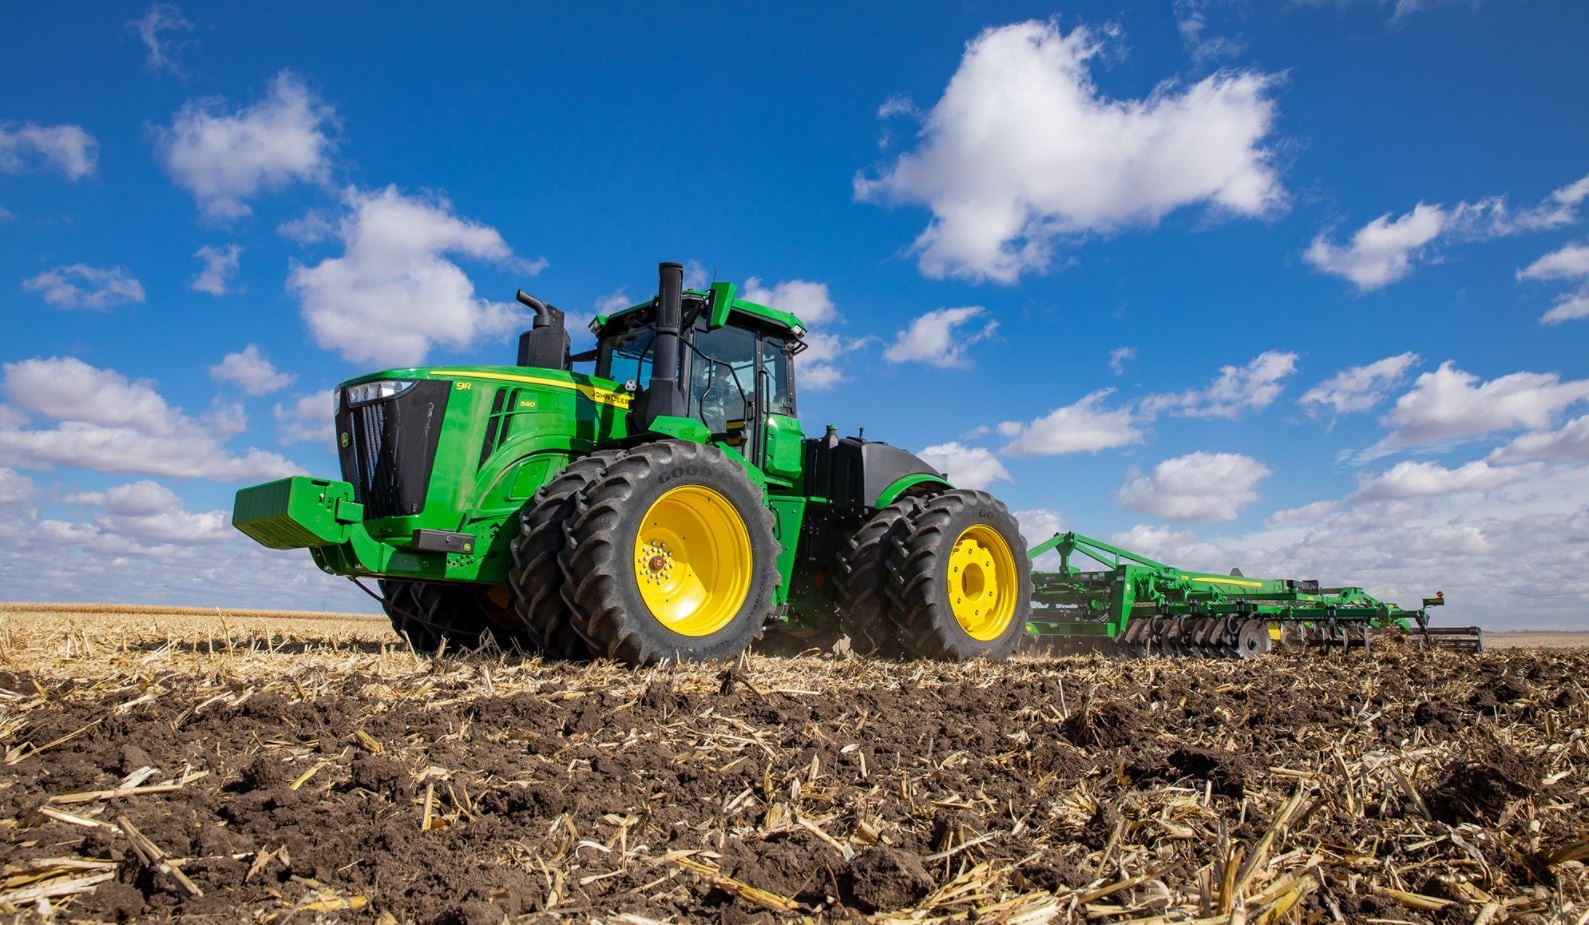 John Deeren uudet 9-sarjan traktorit